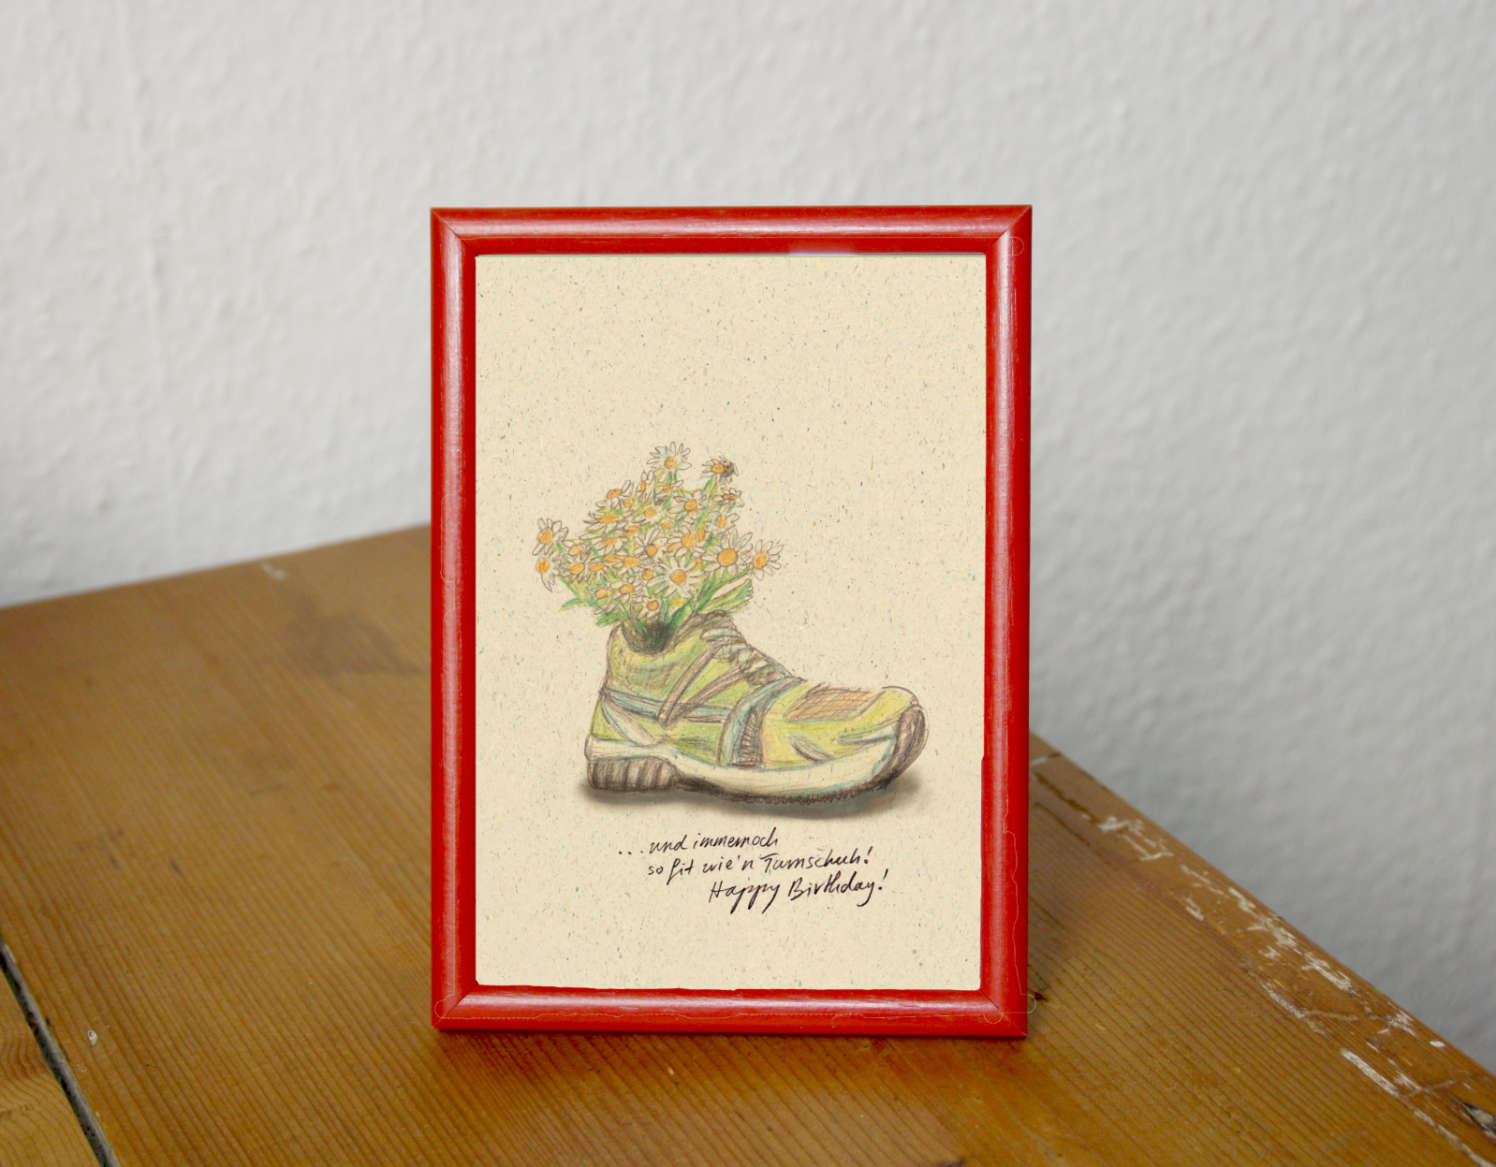 Postkarte alter Schuh mit Blumen und Text und immernoch so fit wien Turnschuh